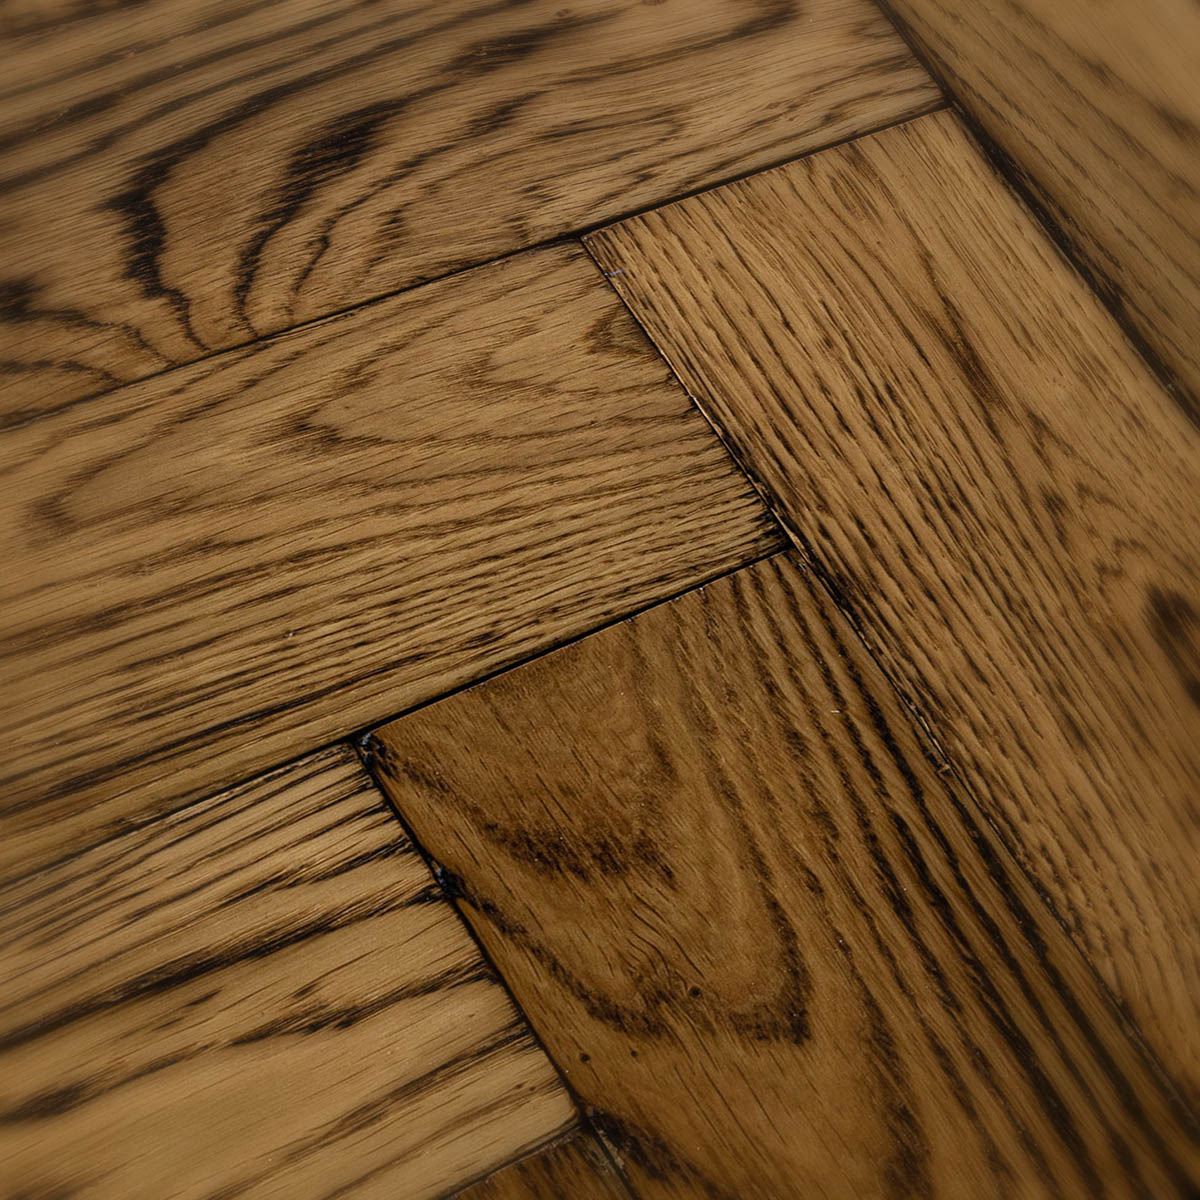 Regal Lane - Tumbled Edged Solid Oak Parquet Floor